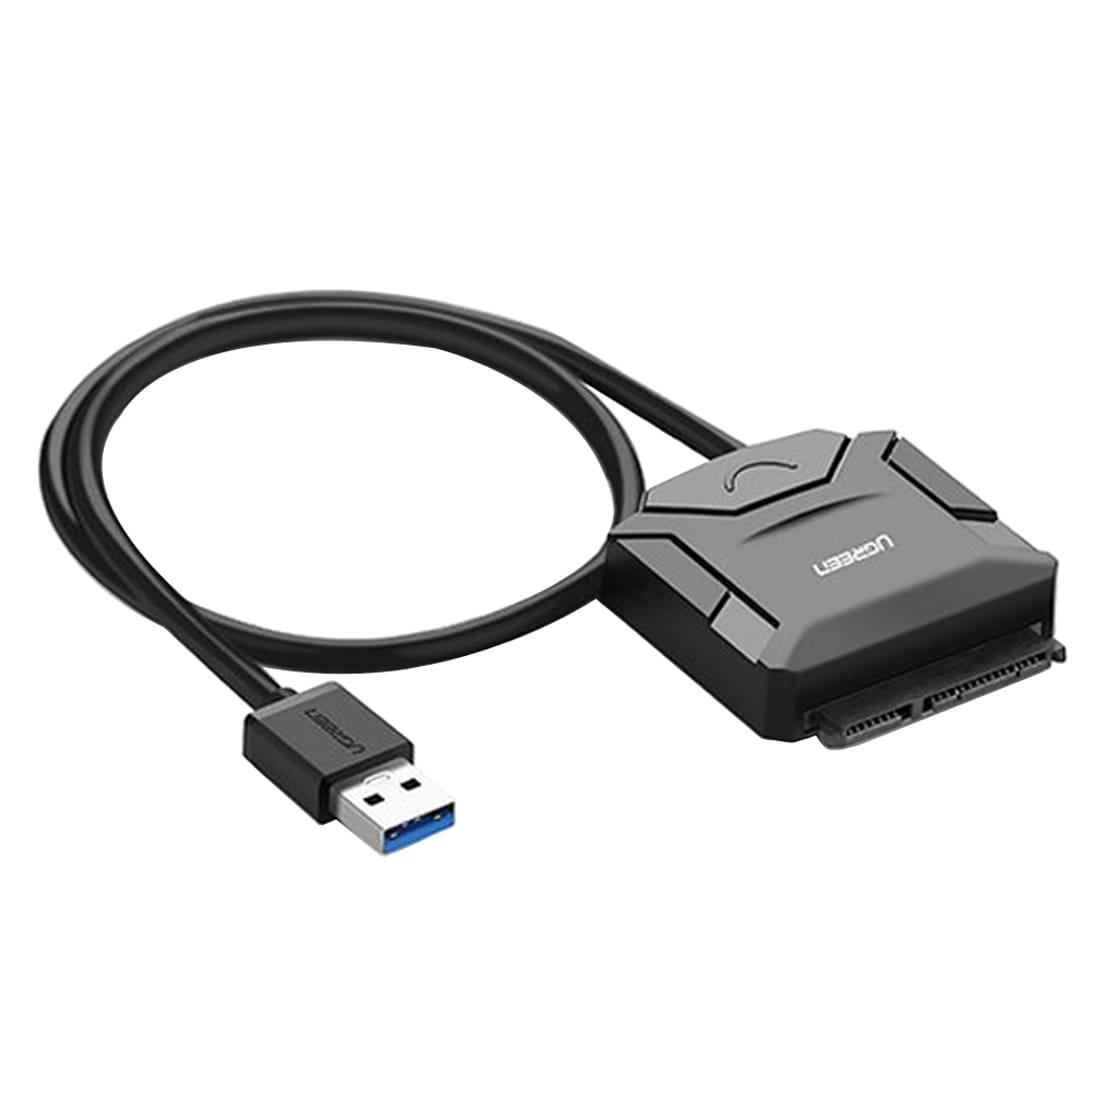 Adapter omvandlare USB 3.0 tillSATA Adapter  2.5 / 3.5" hårddisk